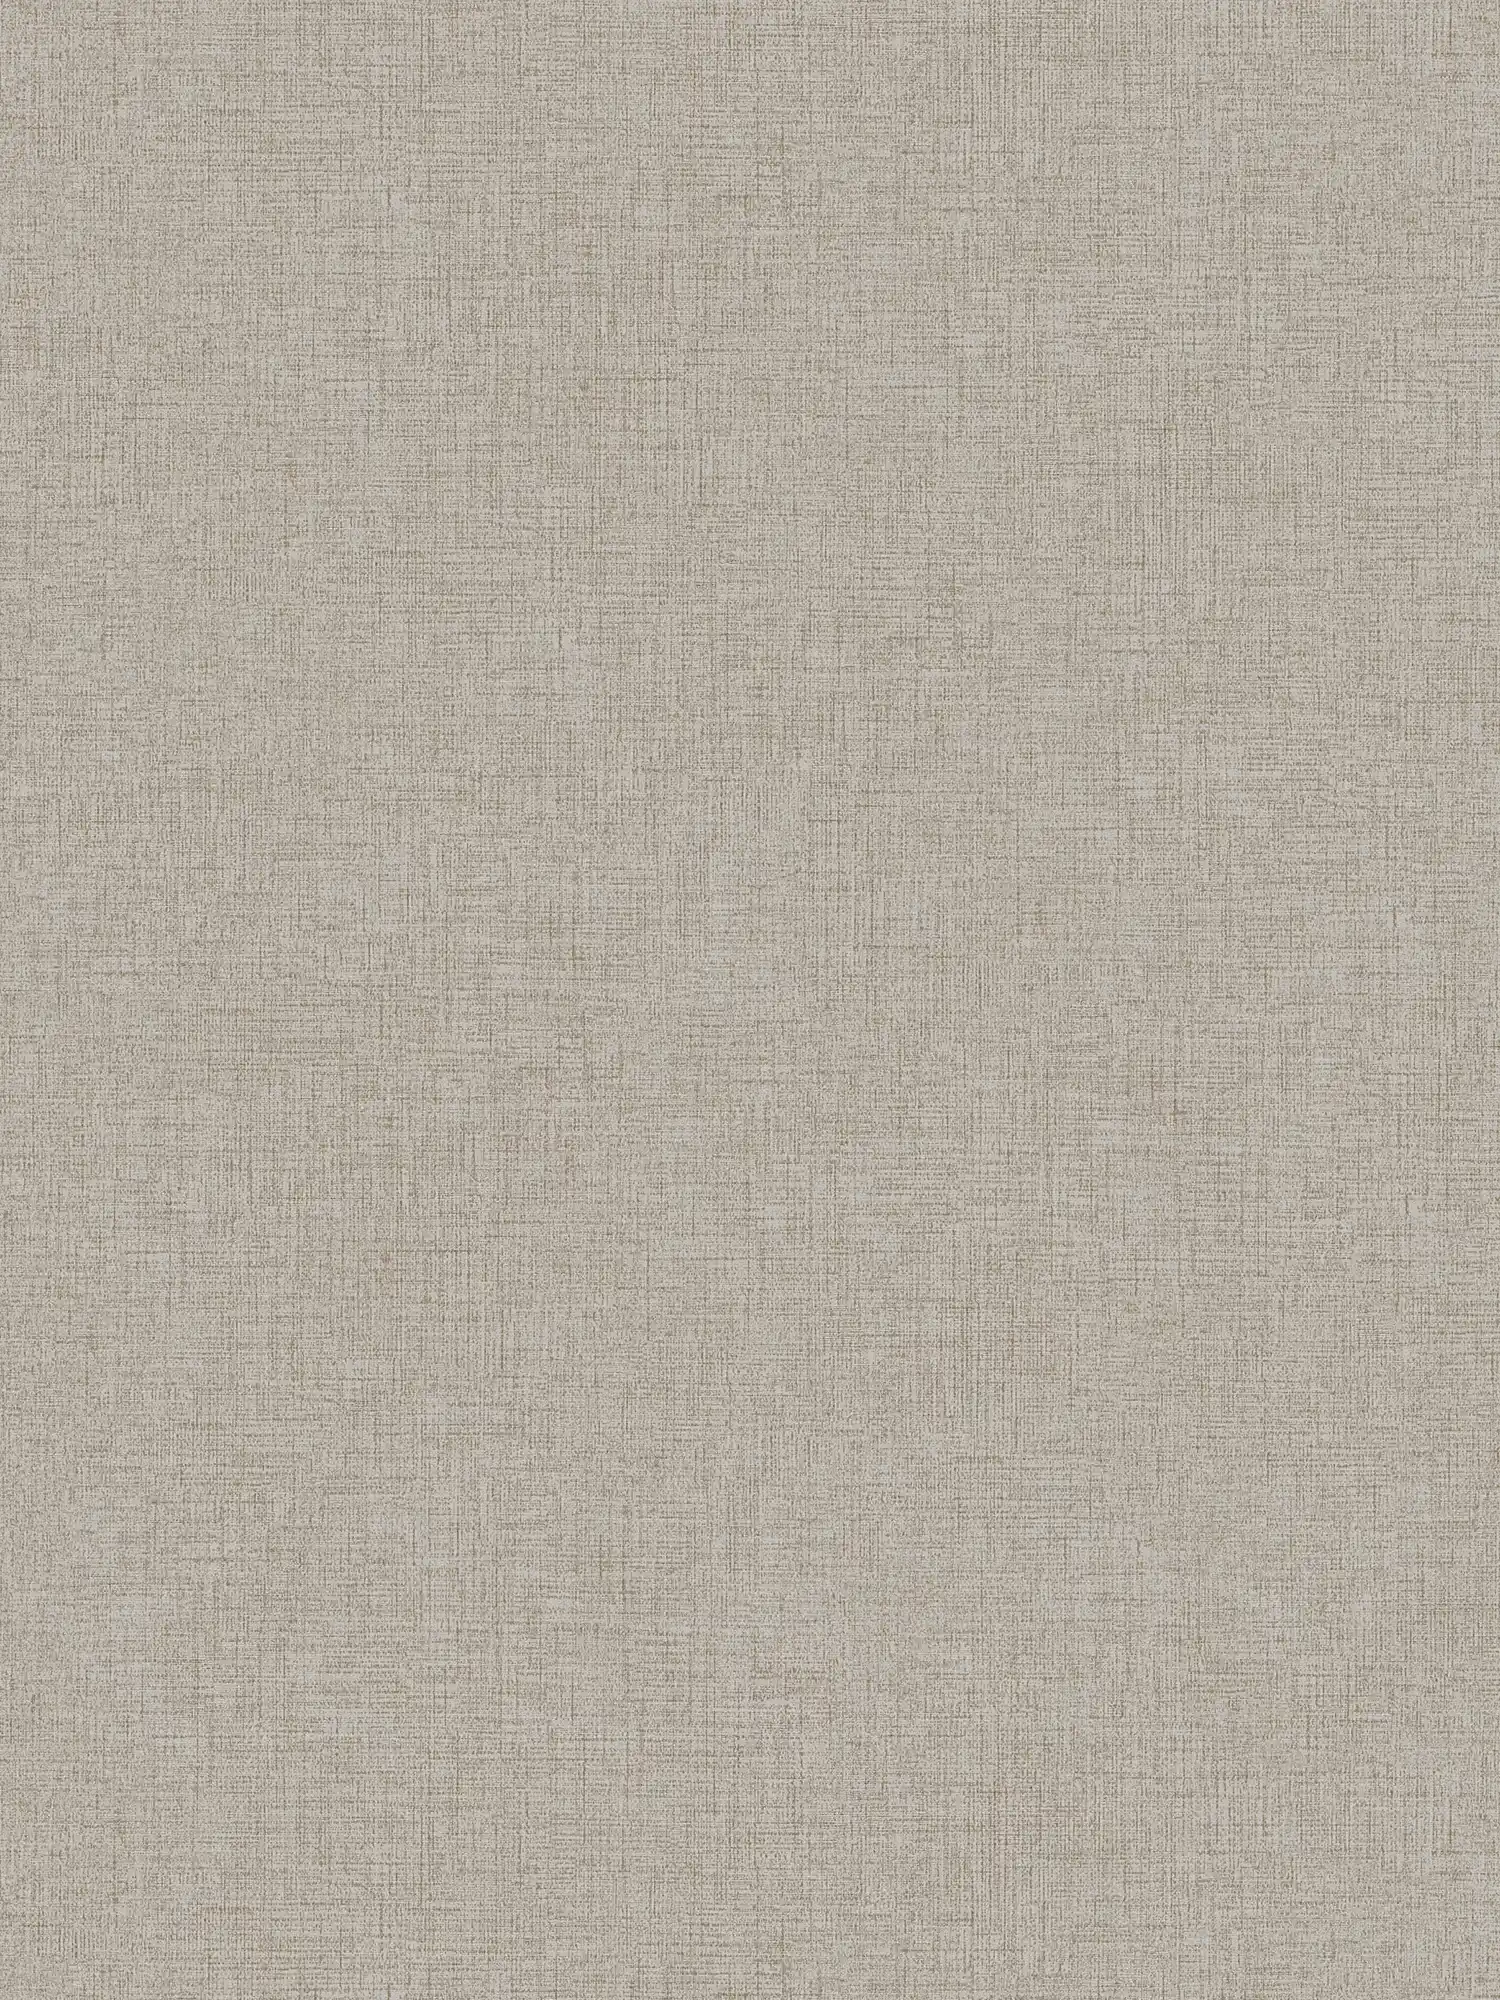 Linen look wallpaper plain, neutral - beige
